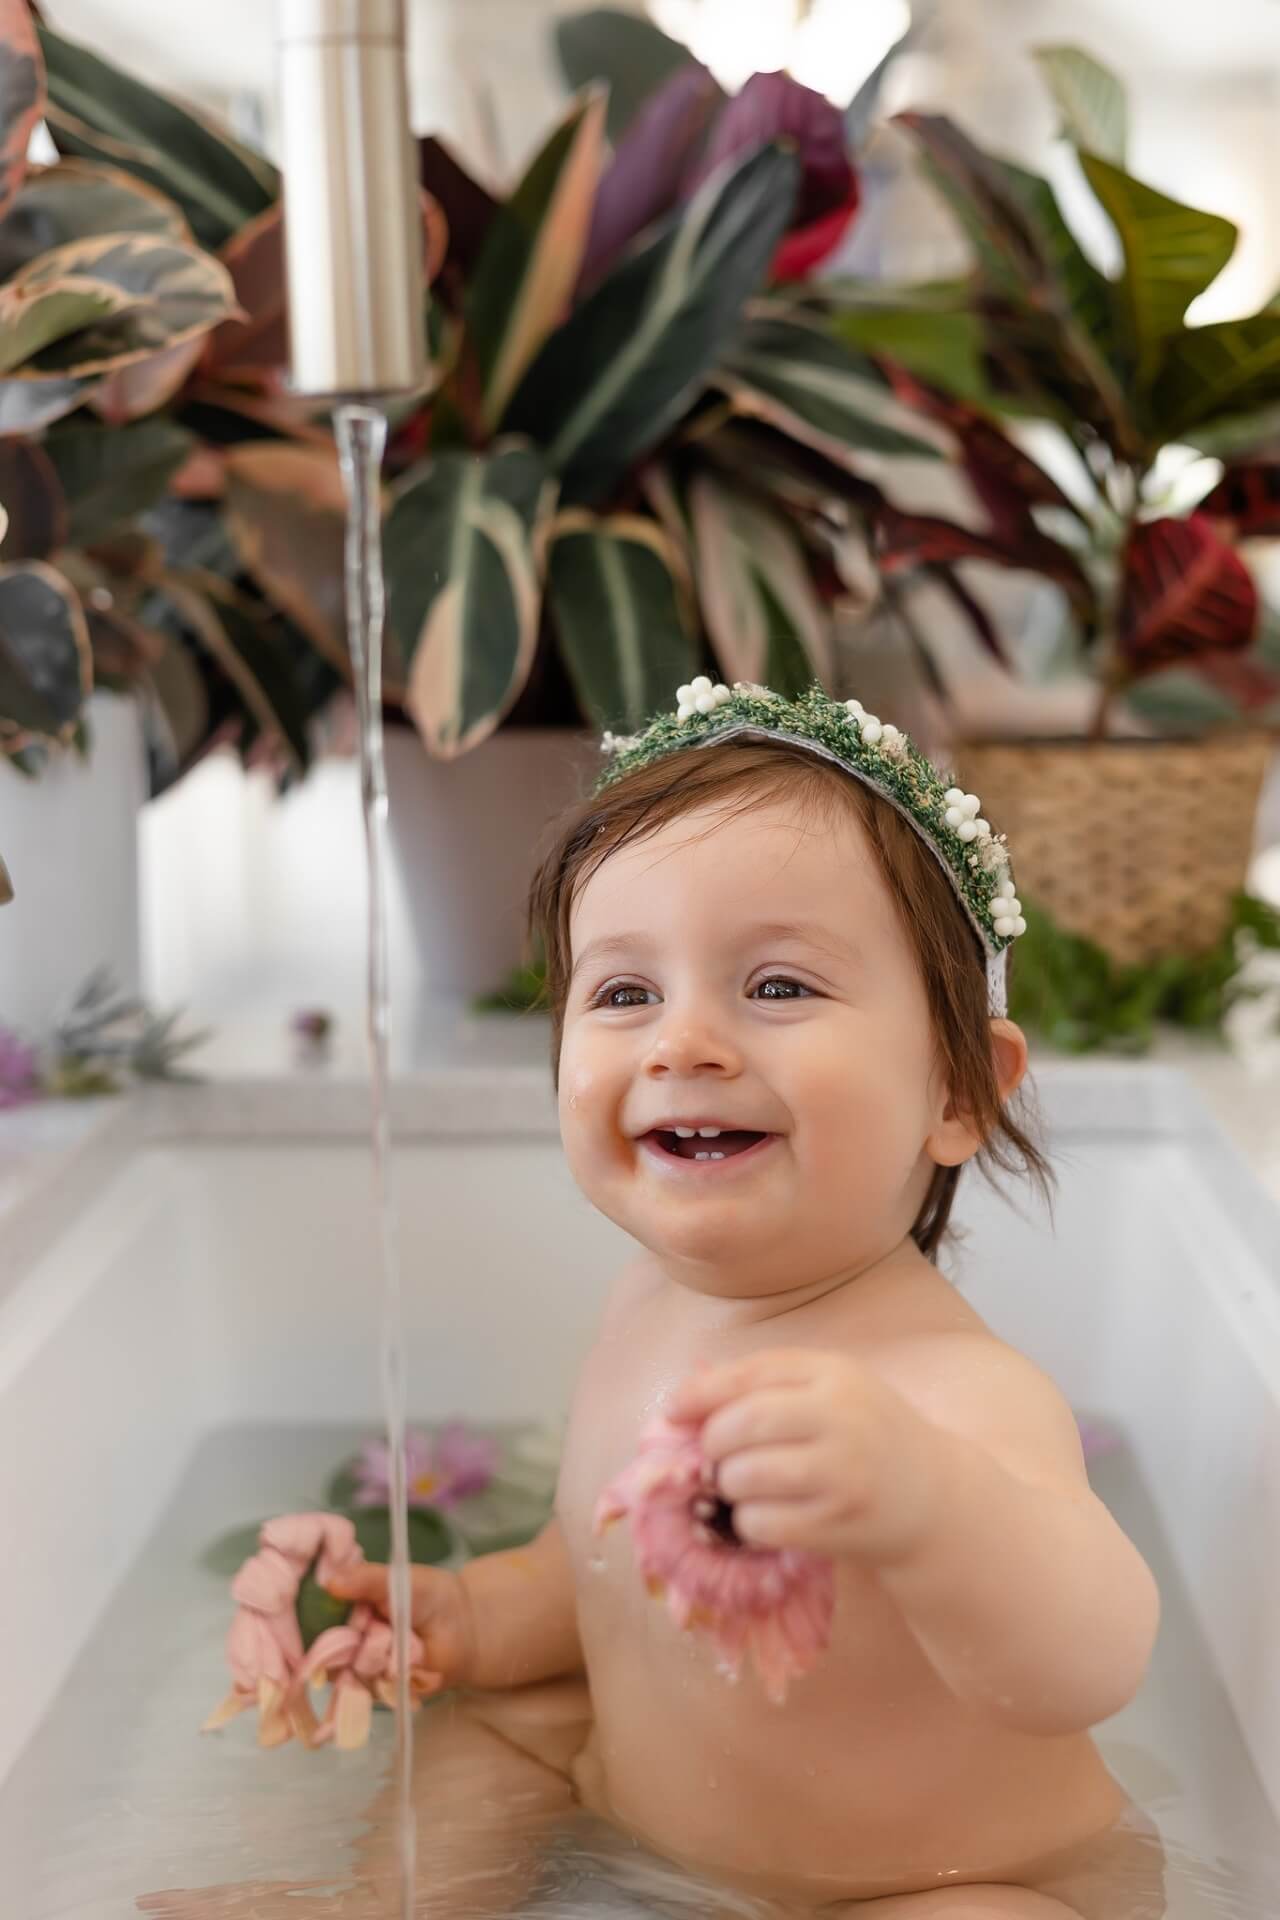 Un bébé dans une baignoire entouré de plantes, capturé par un photographe talentueux à des tarifs abordables.